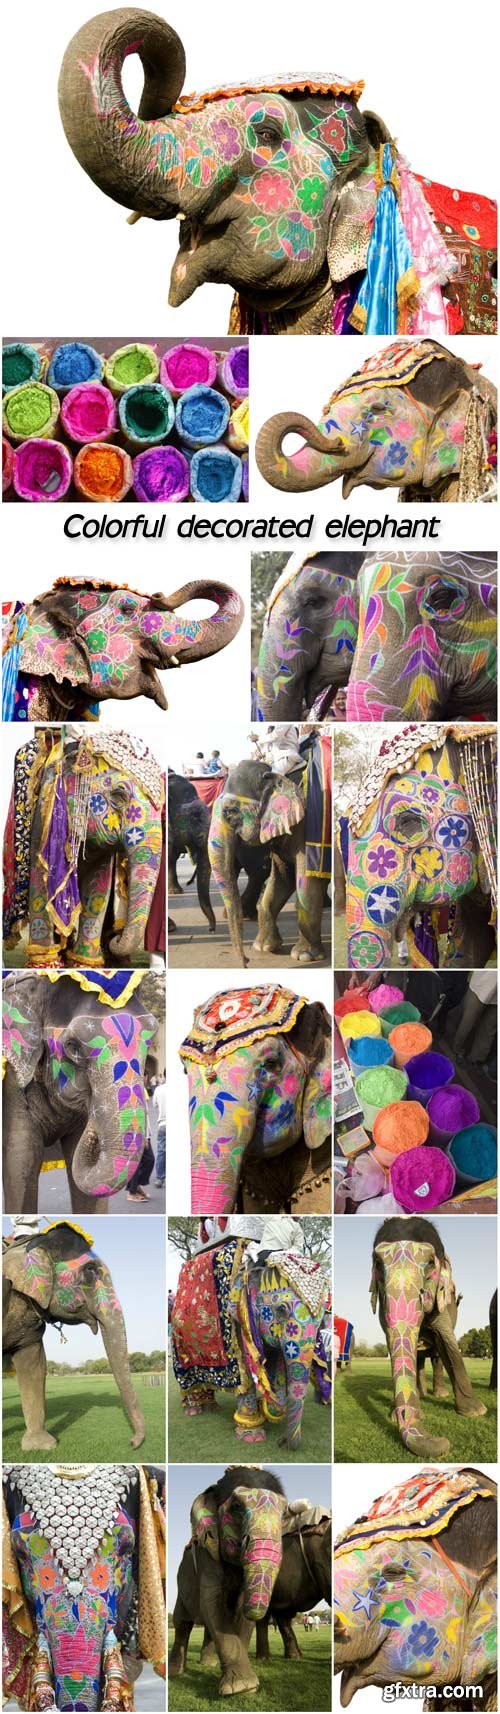 Colorful decorated elephant, Jaipur, Rajasthan, India